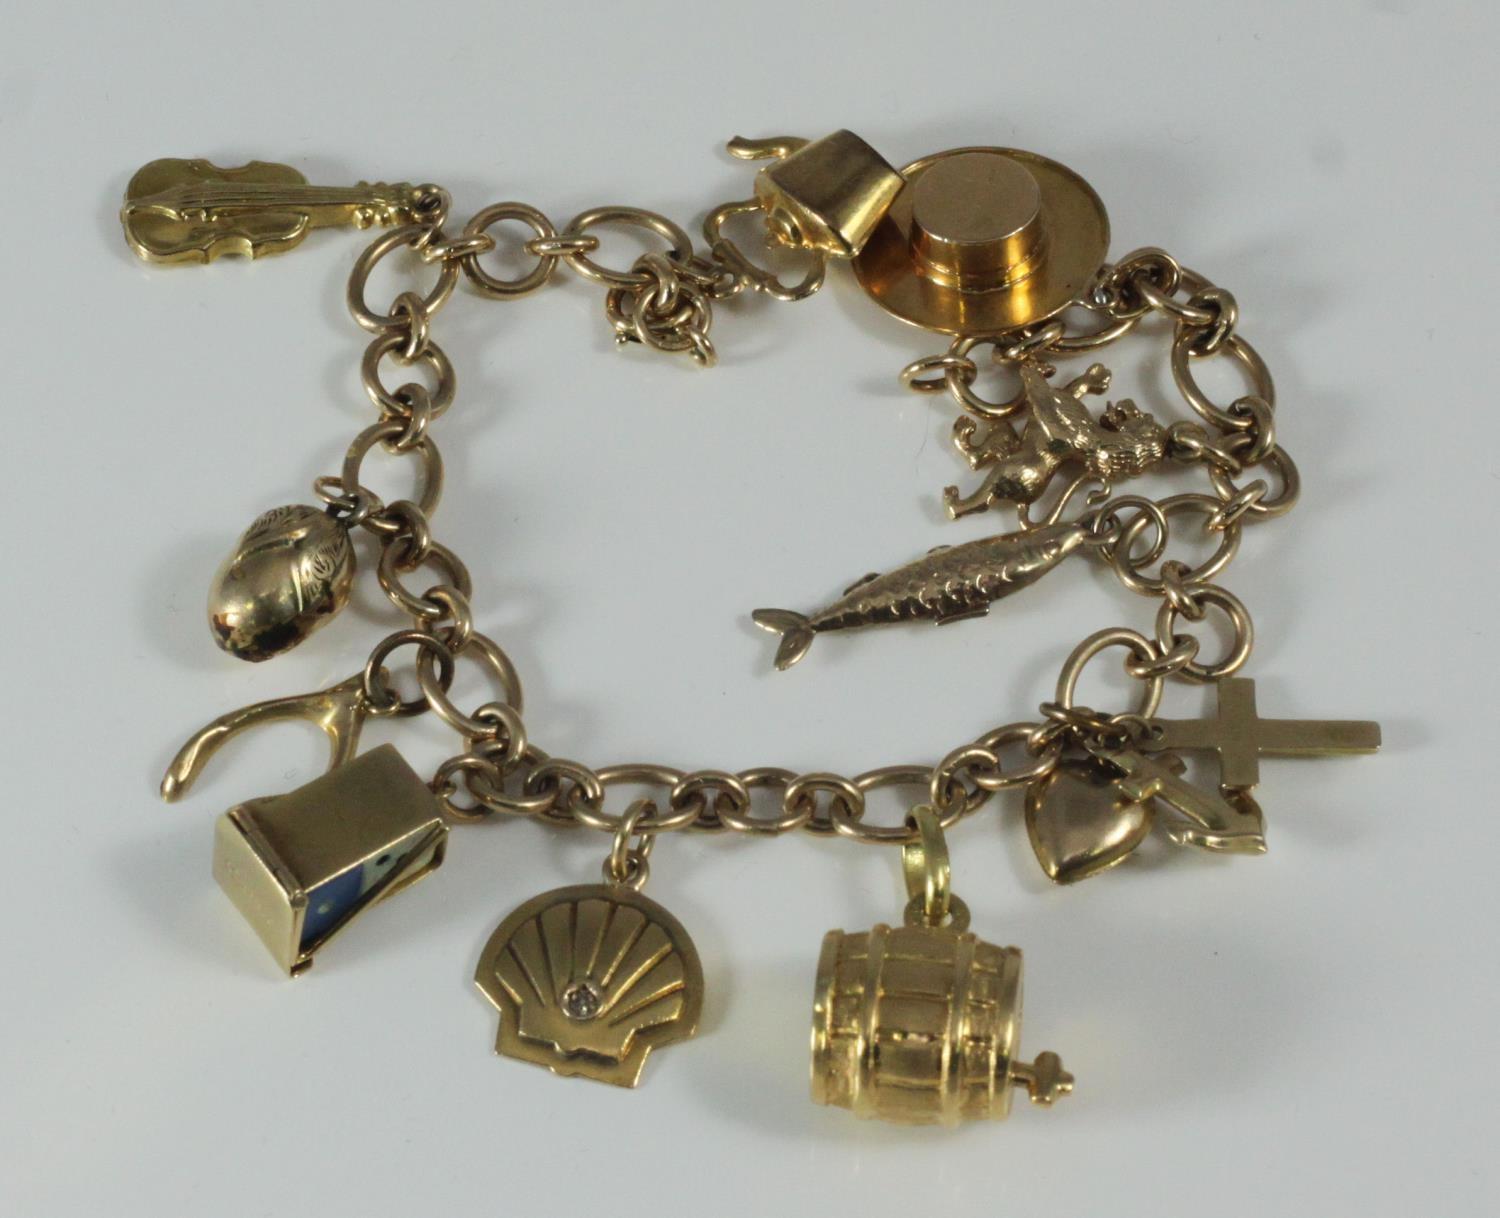 A ladies 9ct gold 13-charm bracelet, 22.18 grams